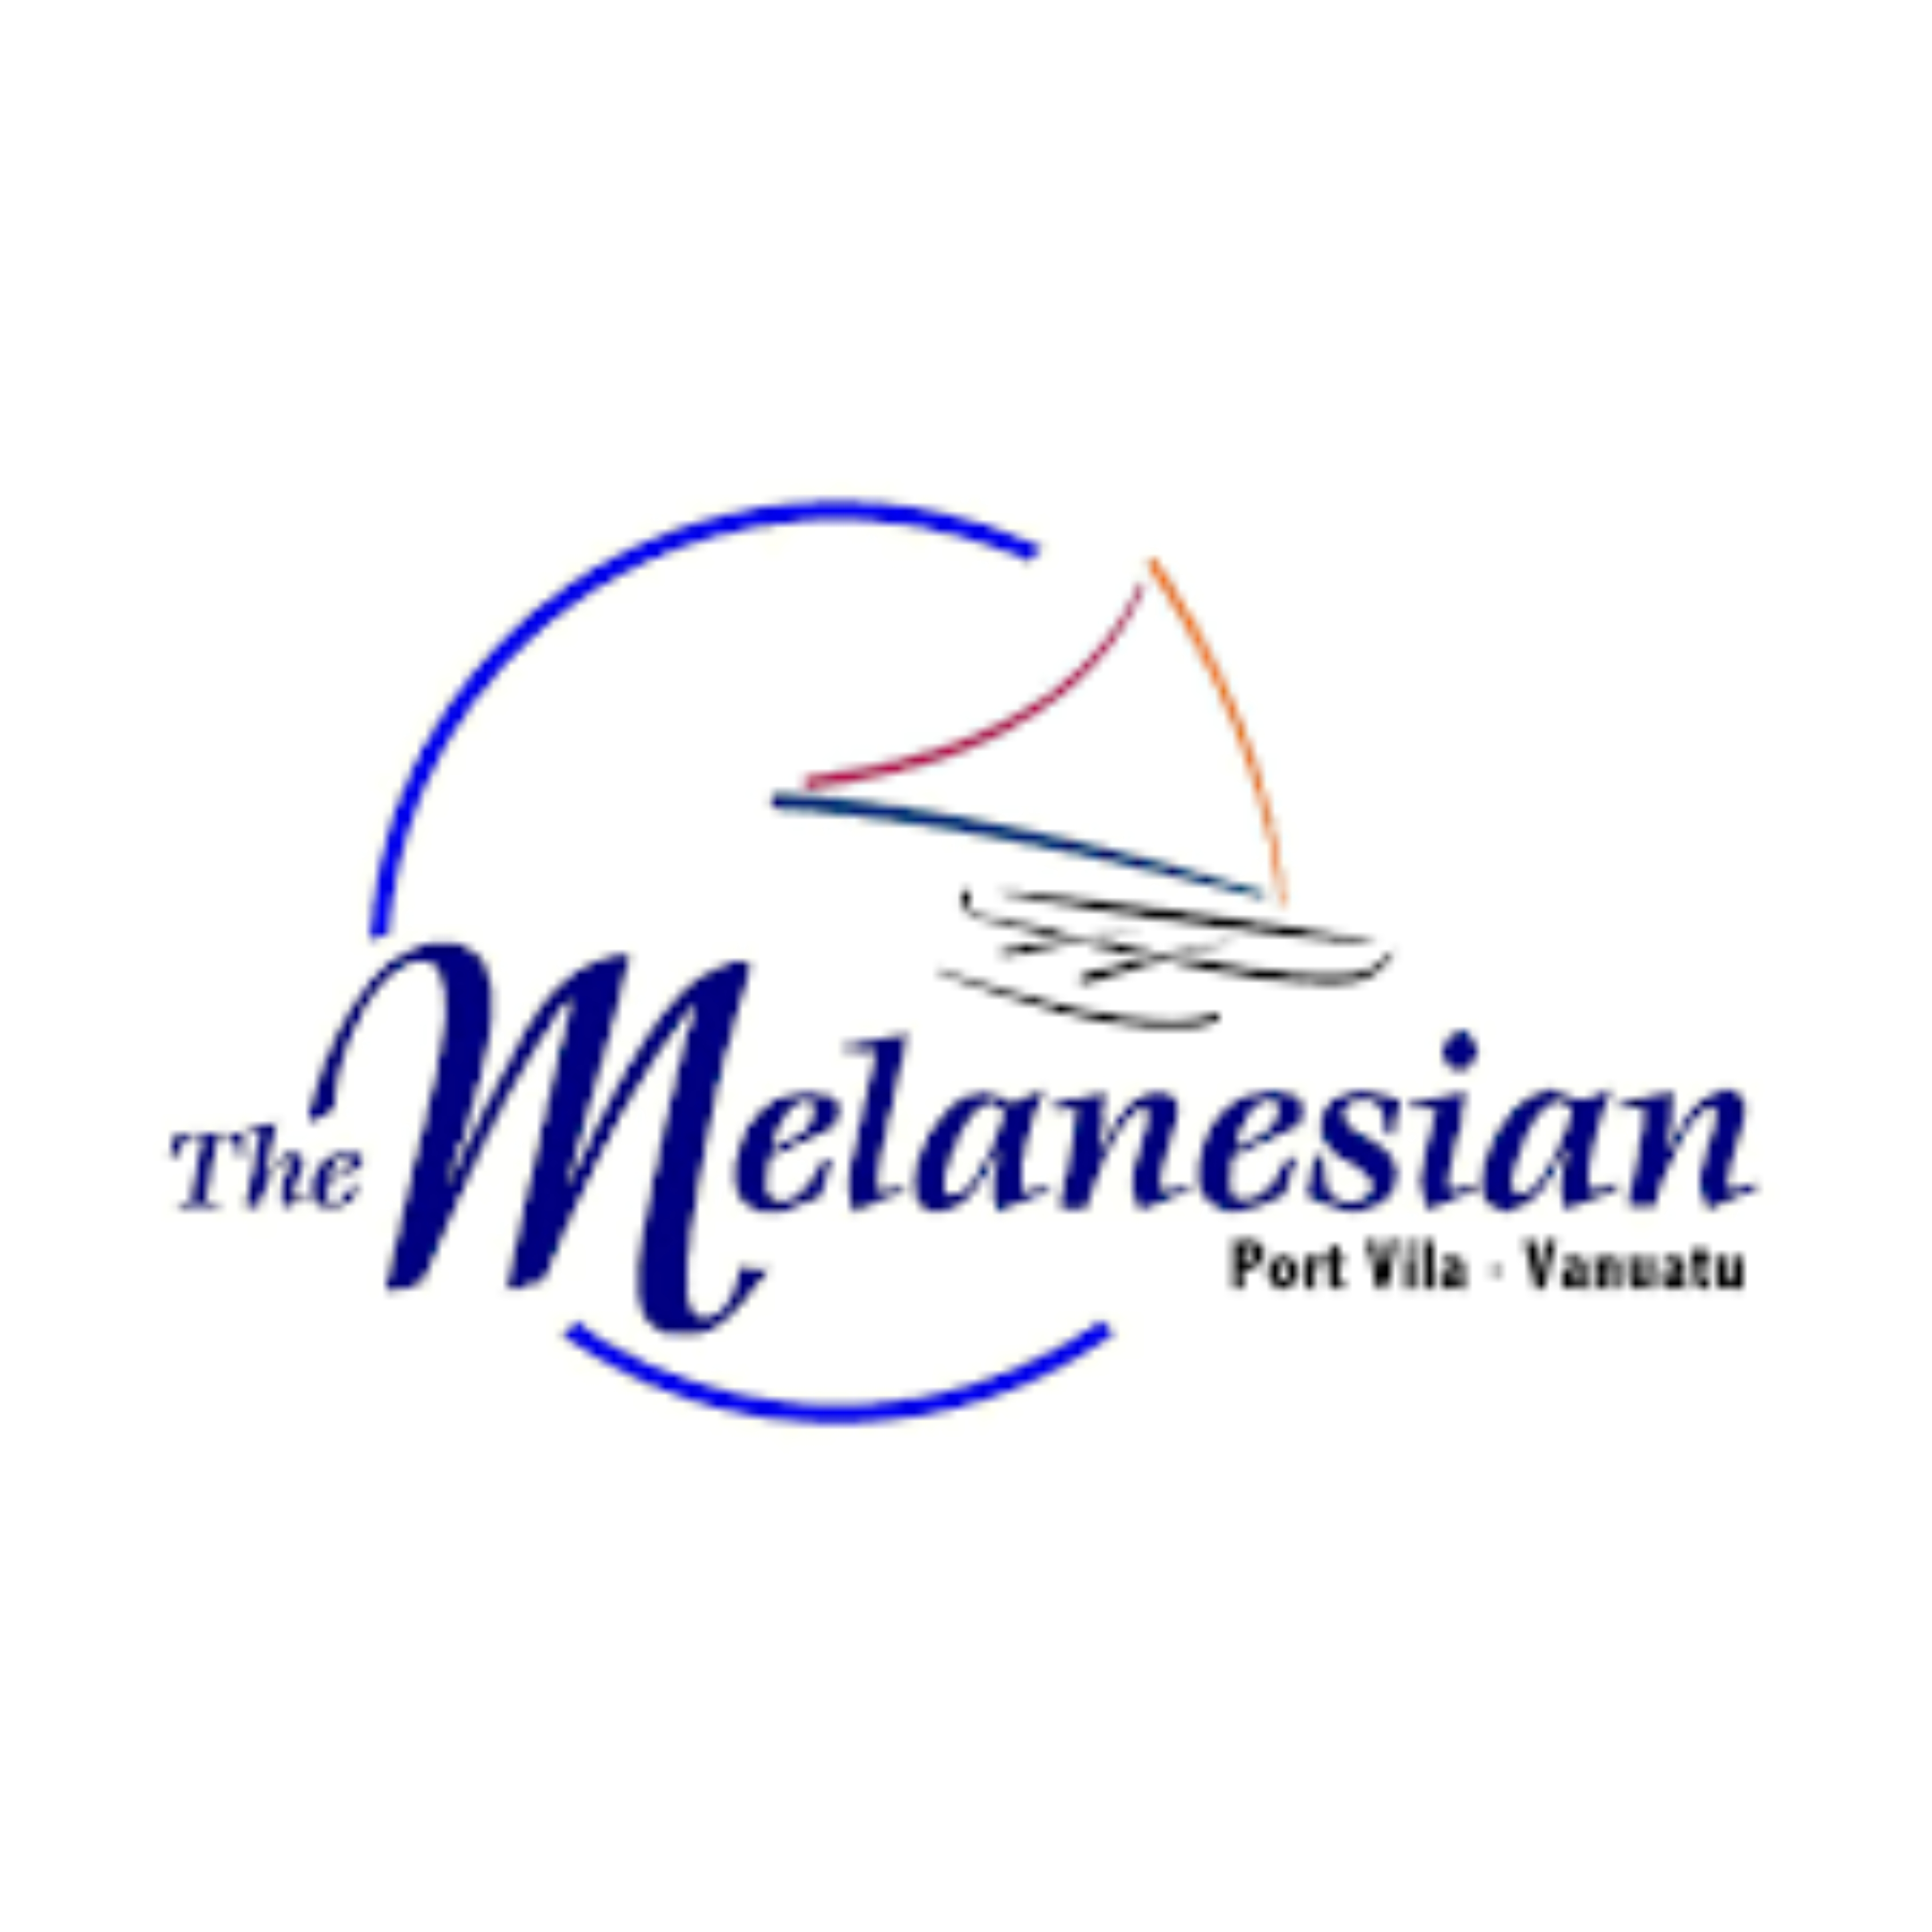 The Melanesian Port Vila